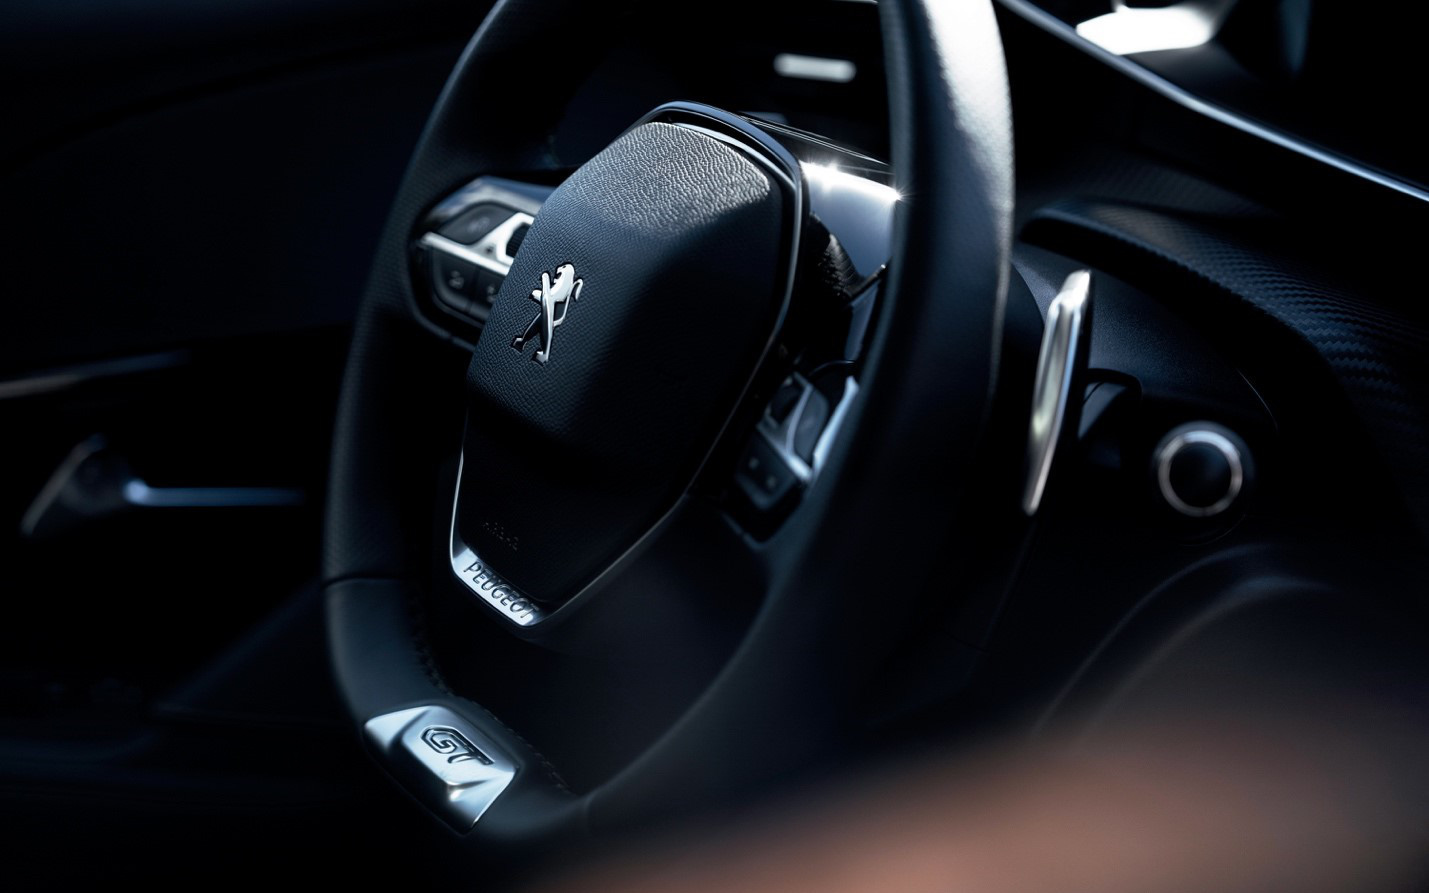 Vô-lăng D-cut: Điểm nhấn thiết kế riêng biệt của Peugeot